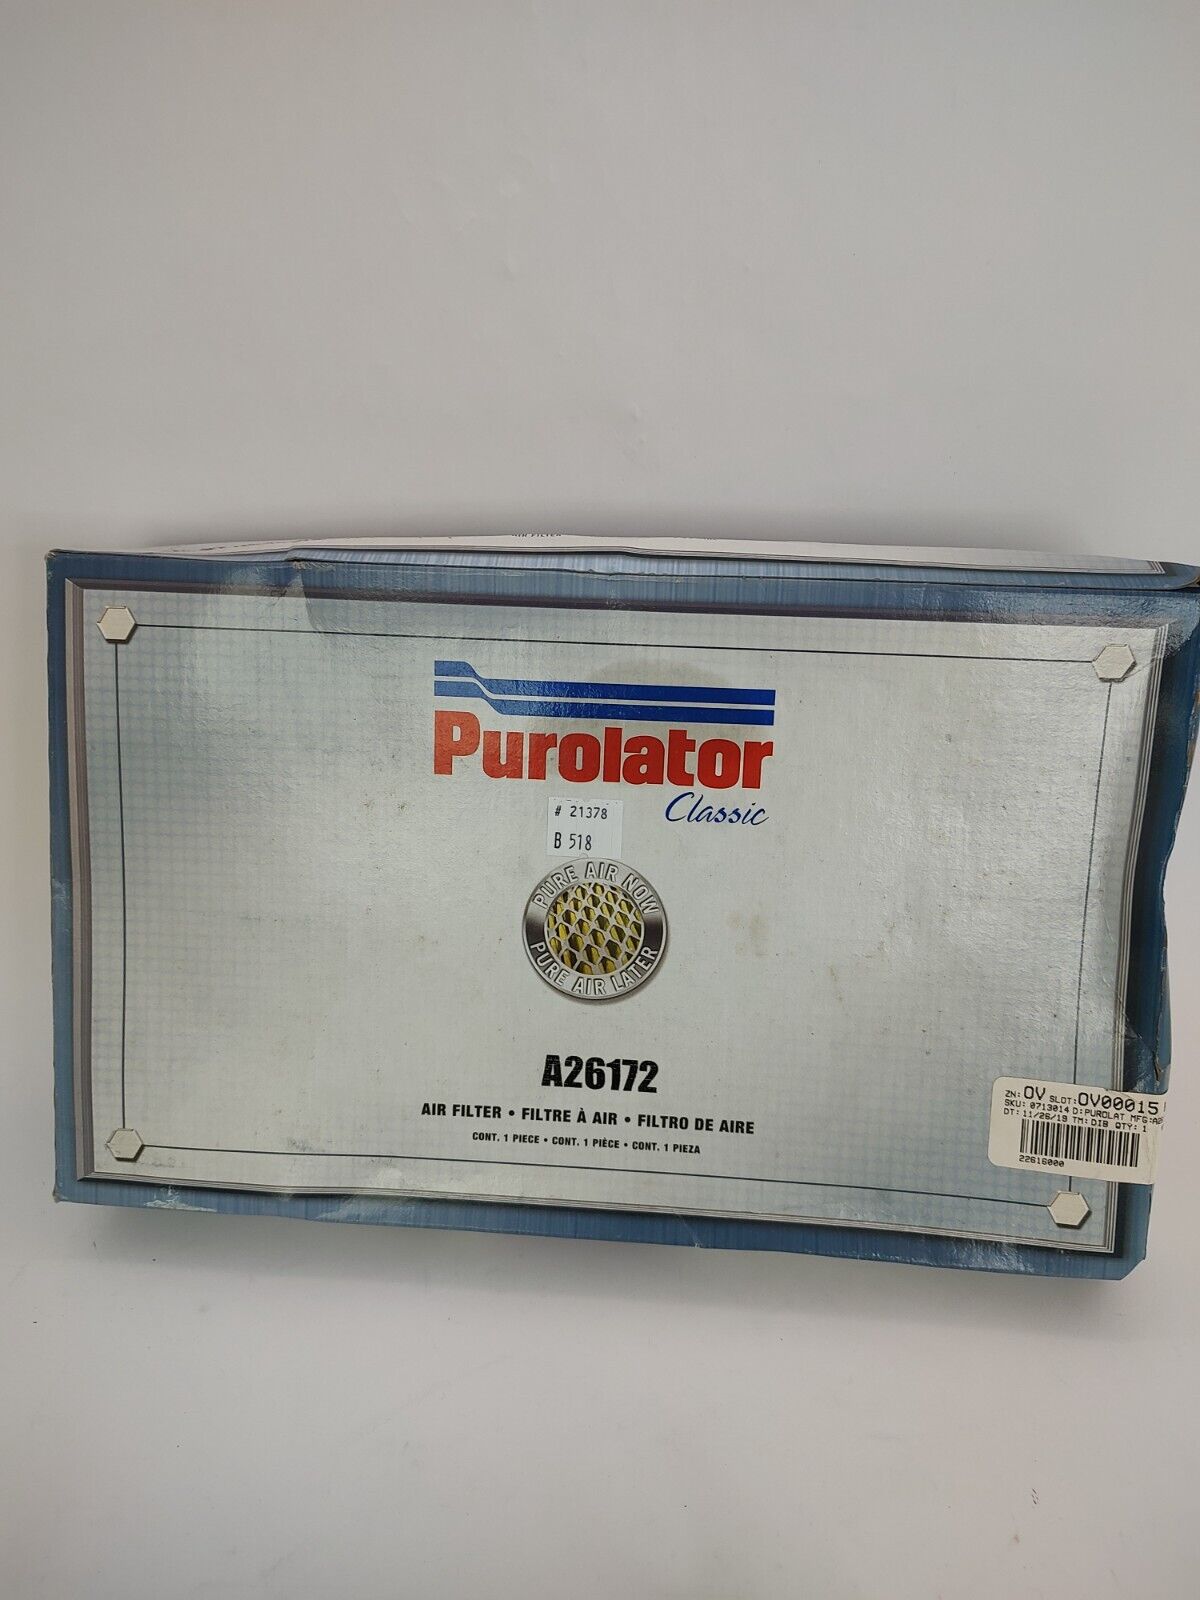 Purolator Classic A26172 Air Filter